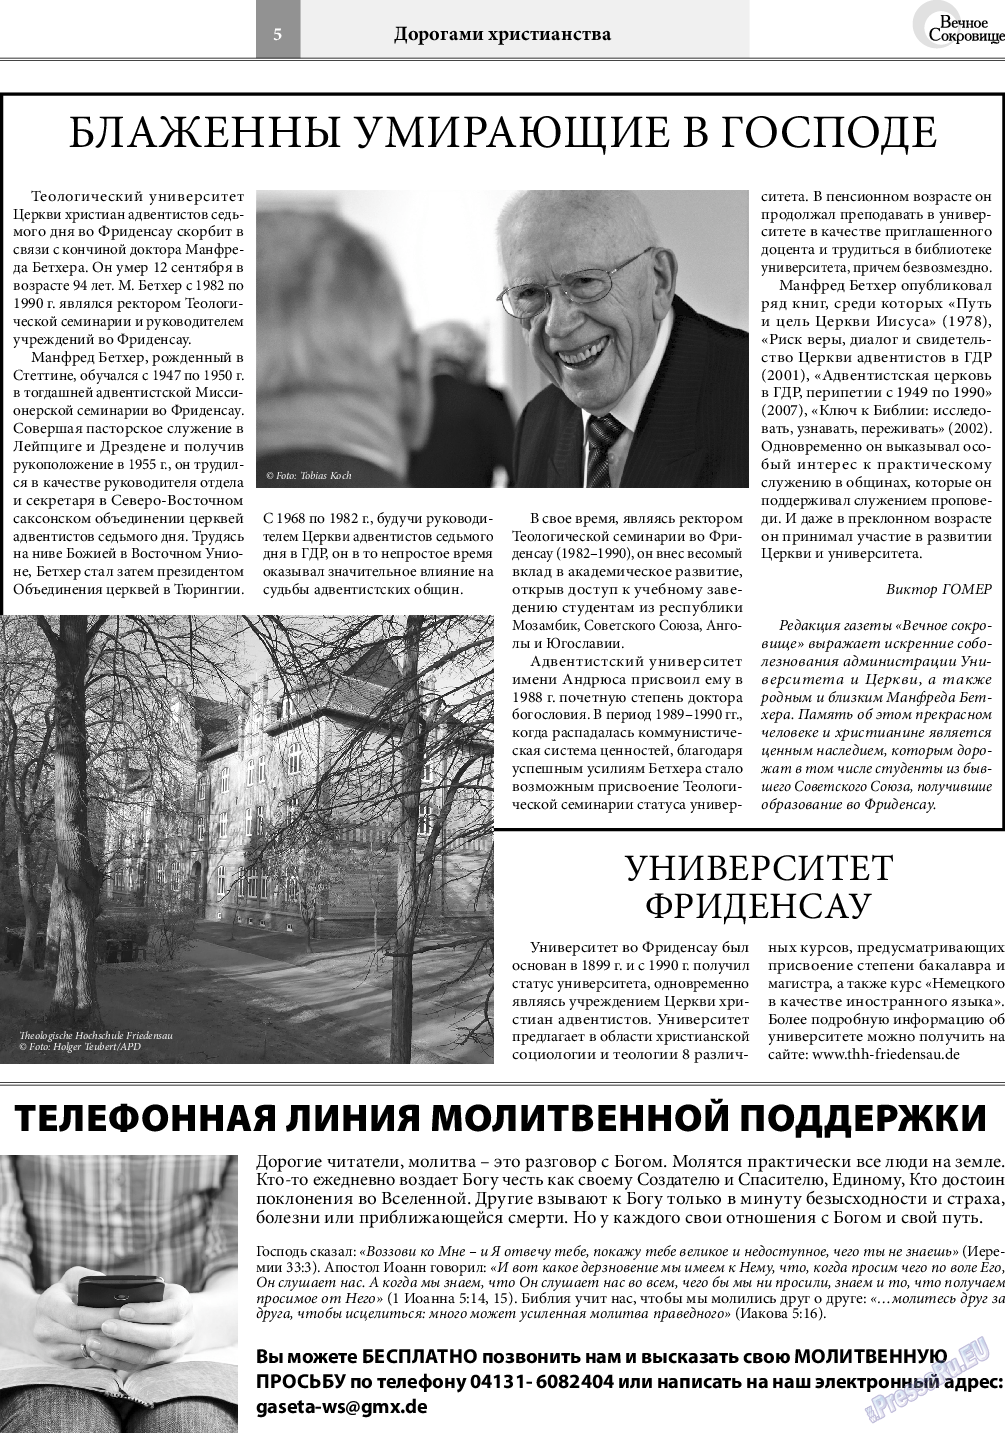 Вечное сокровище, газета. 2019 №5 стр.5